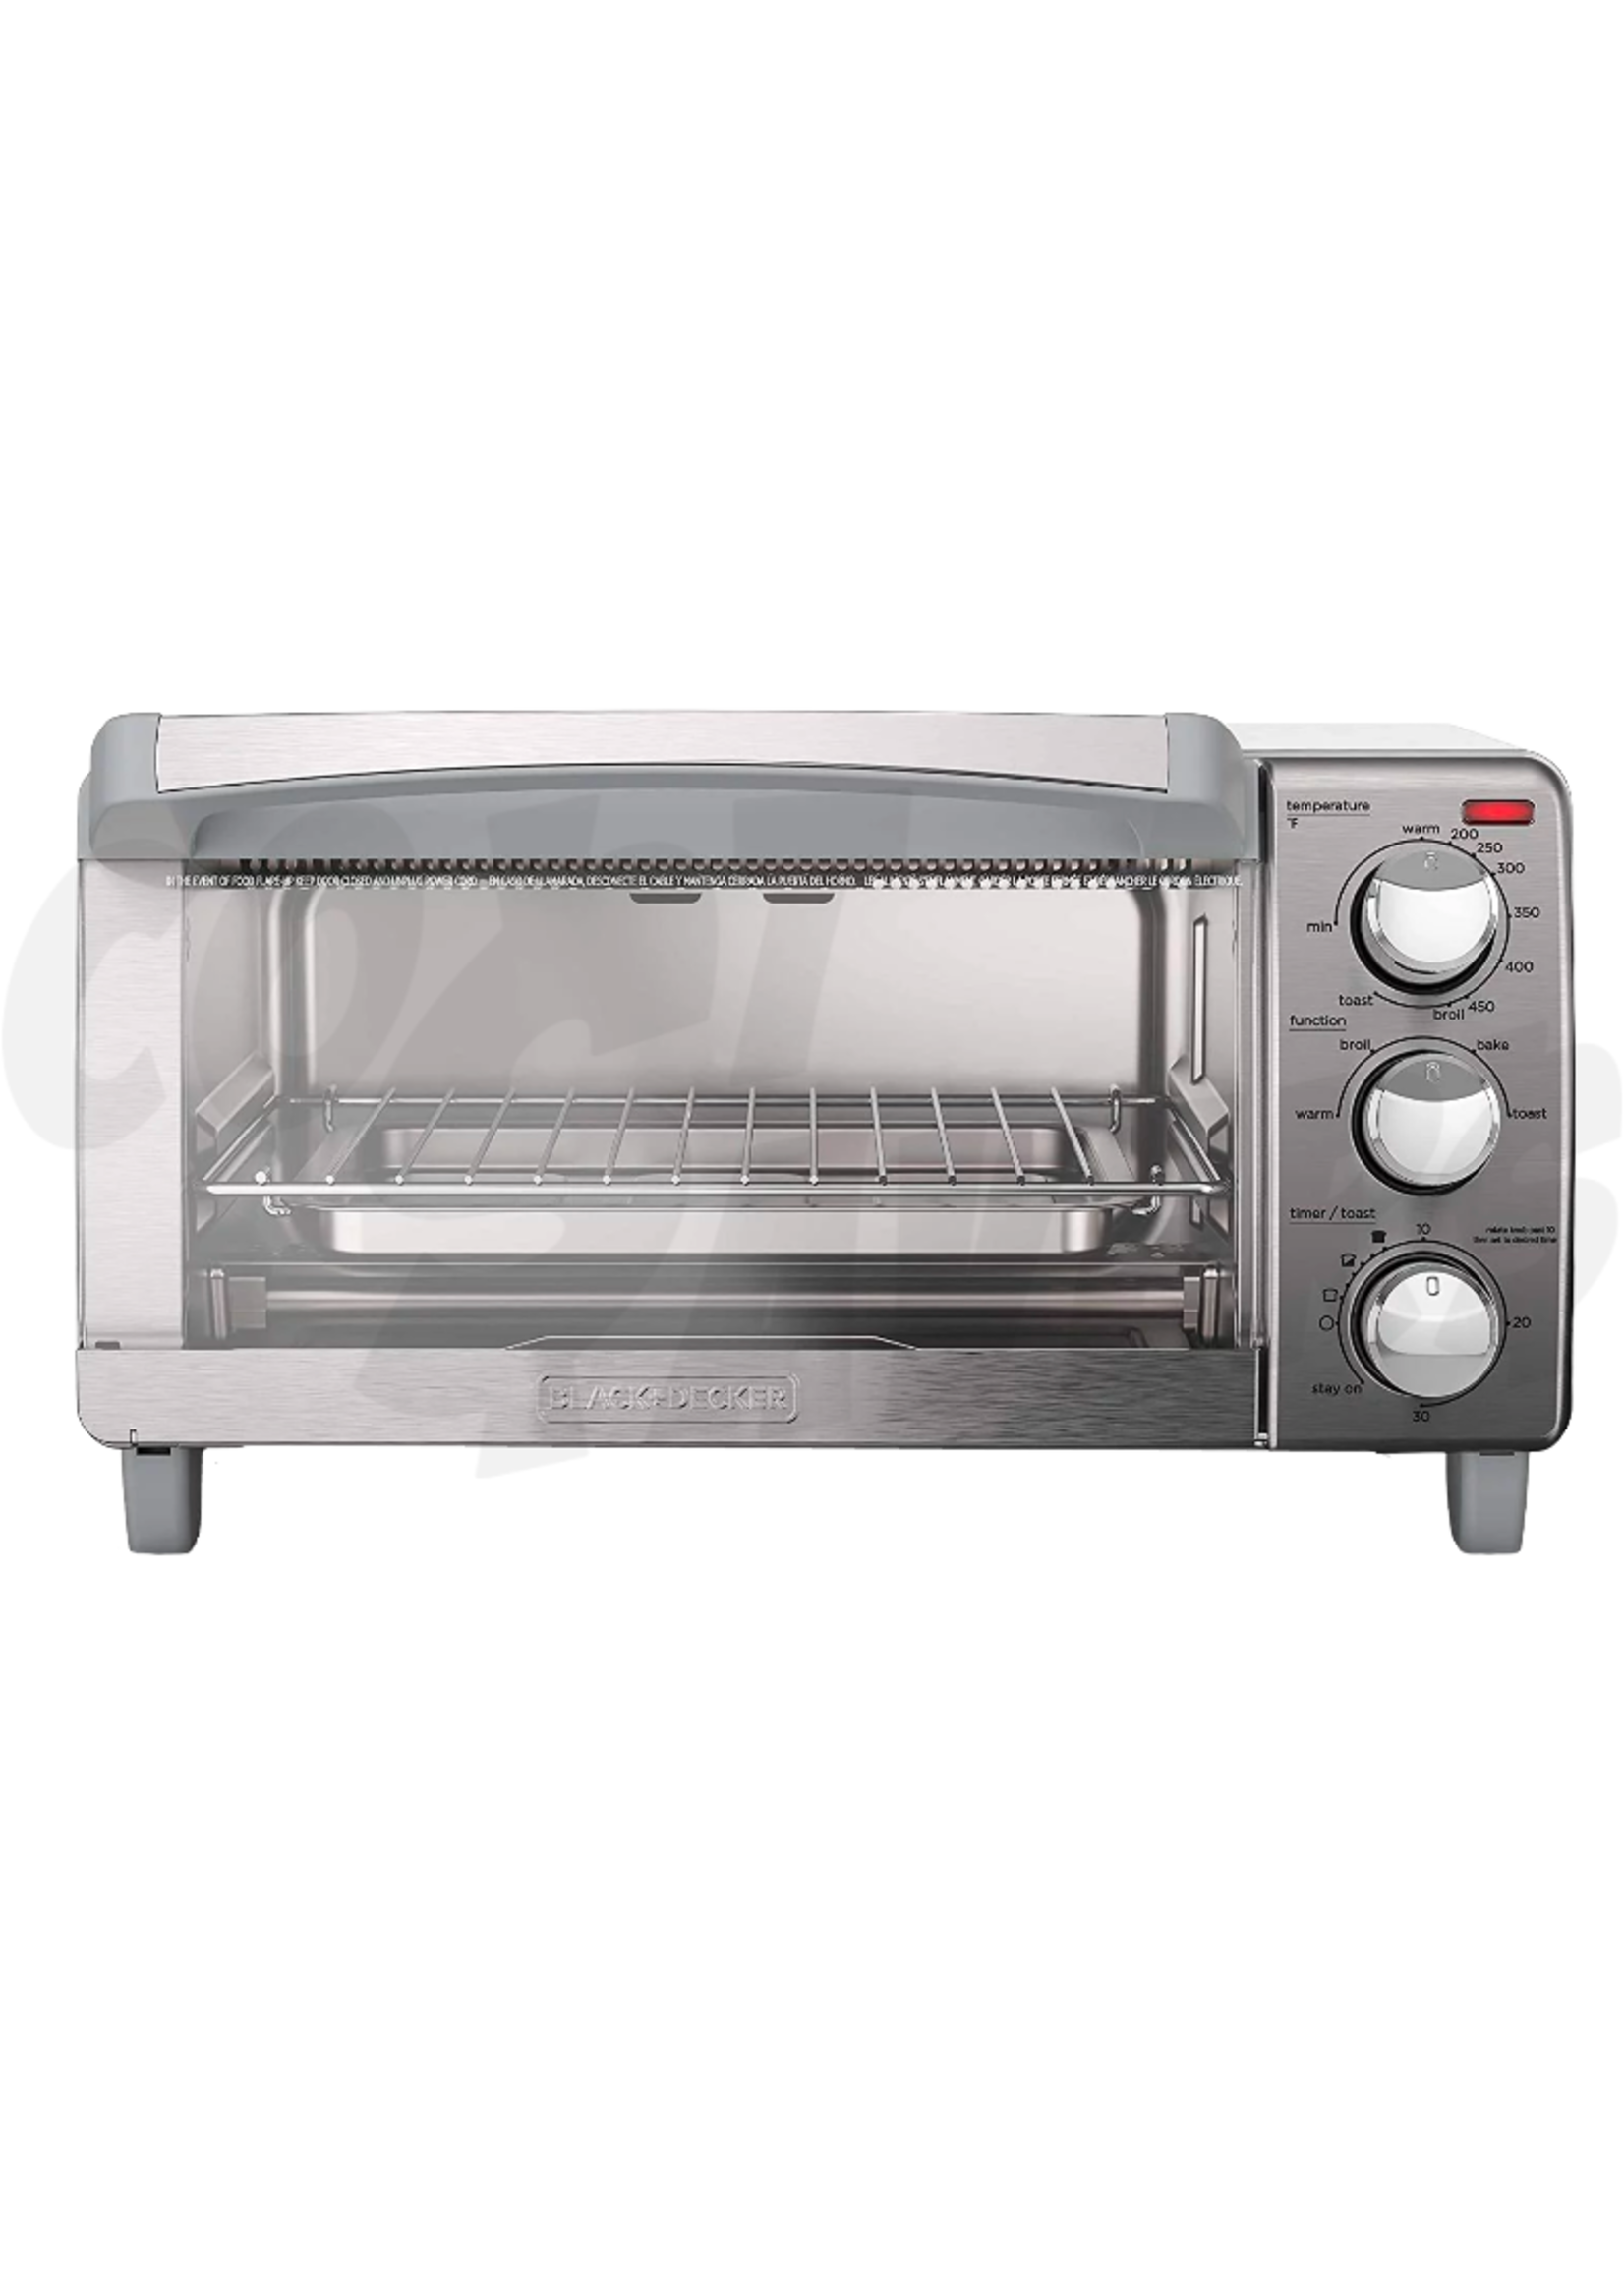 Black & Decker™ 4-Slice Toaster Oven in Grey, 1 ct - Harris Teeter